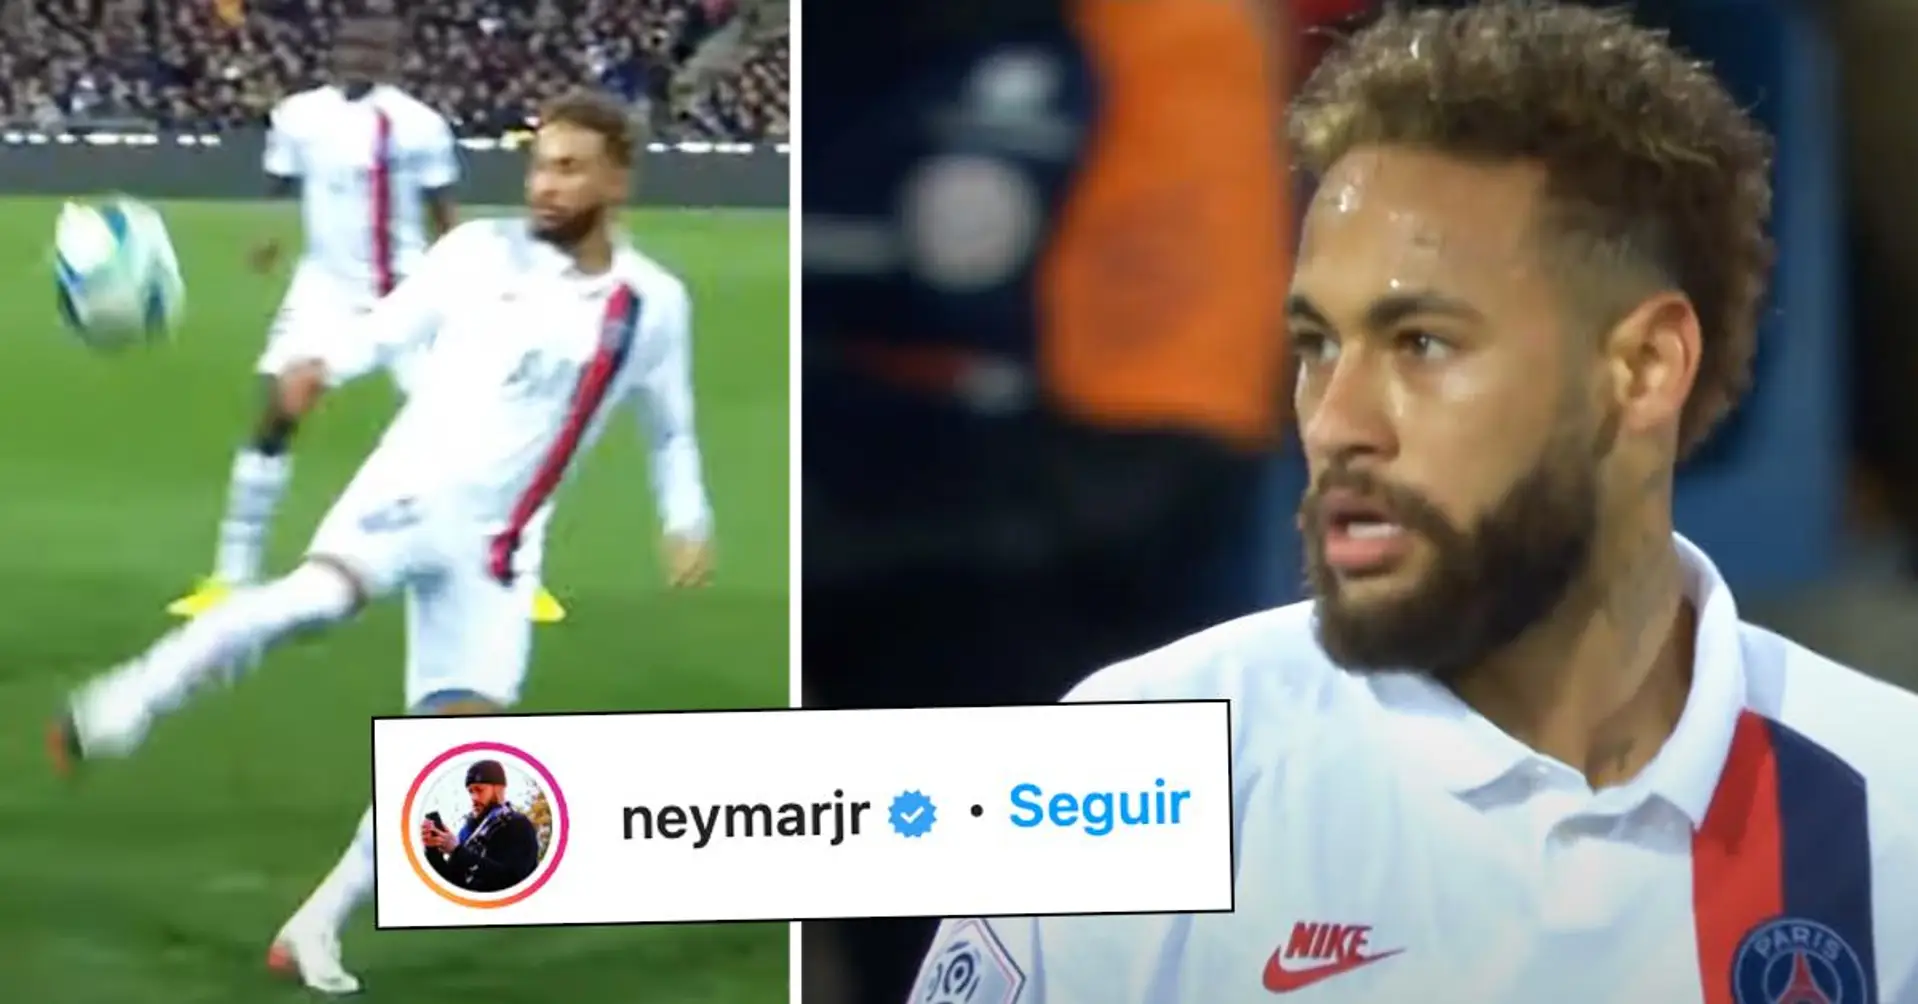 Neymar explodiert auf Instagram nach PSG-Spiel: "Sie nehmen es persönlich. Danke, dass Sie mir das Finale genommen haben"